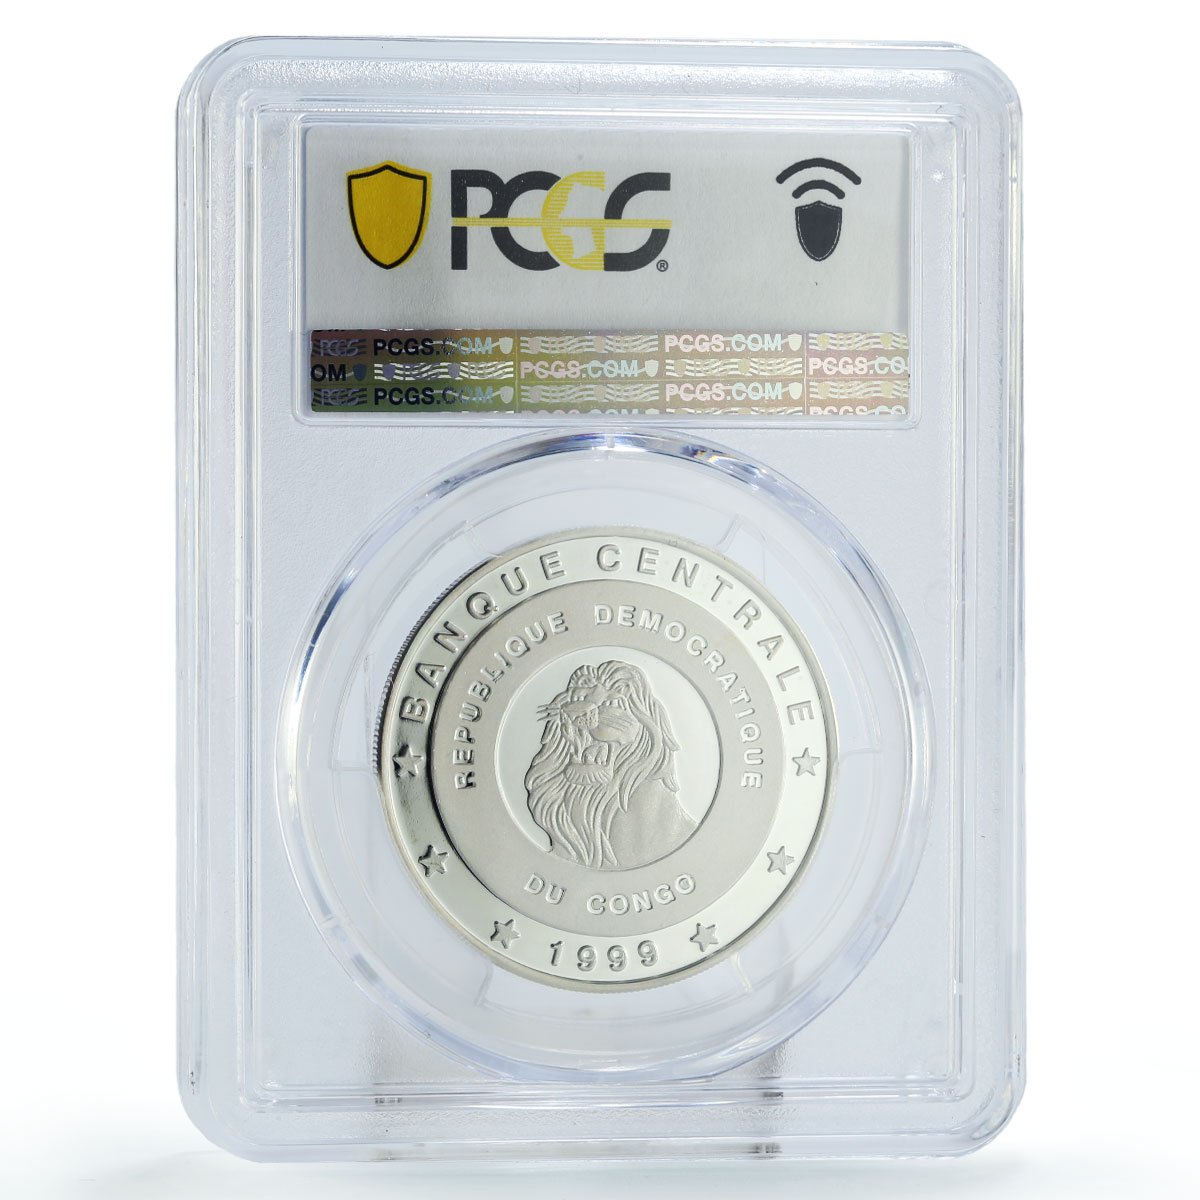 Congo 10 francs Conservation Wildlife Poto Fauna PR69 PCGS silver coin 1999